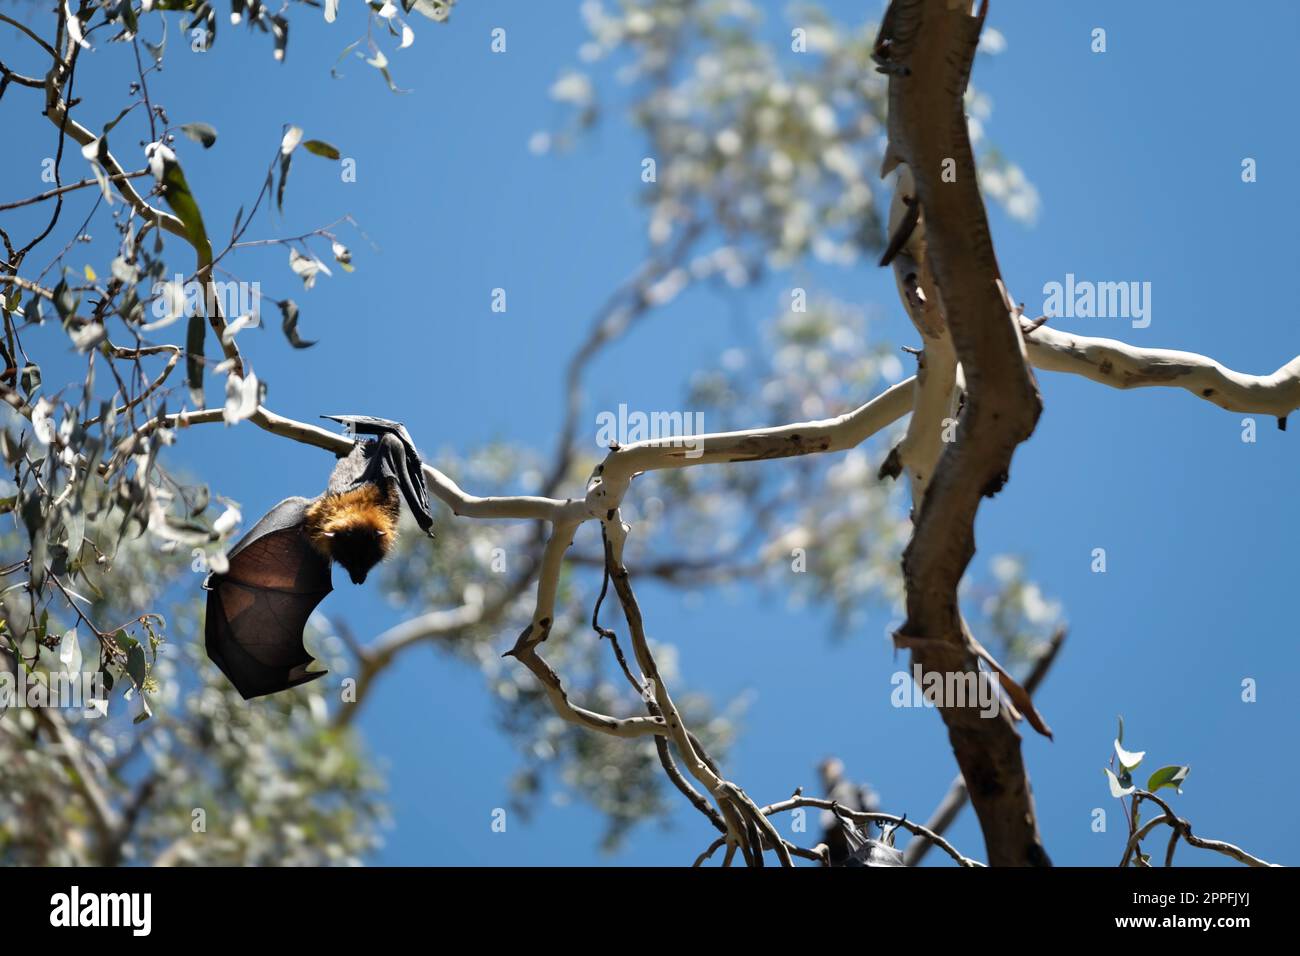 Pipistrelli di frutta (volpi volanti dalla testa grigia) appesi a testa in giù in un albero a Melbourne, Australia Foto Stock